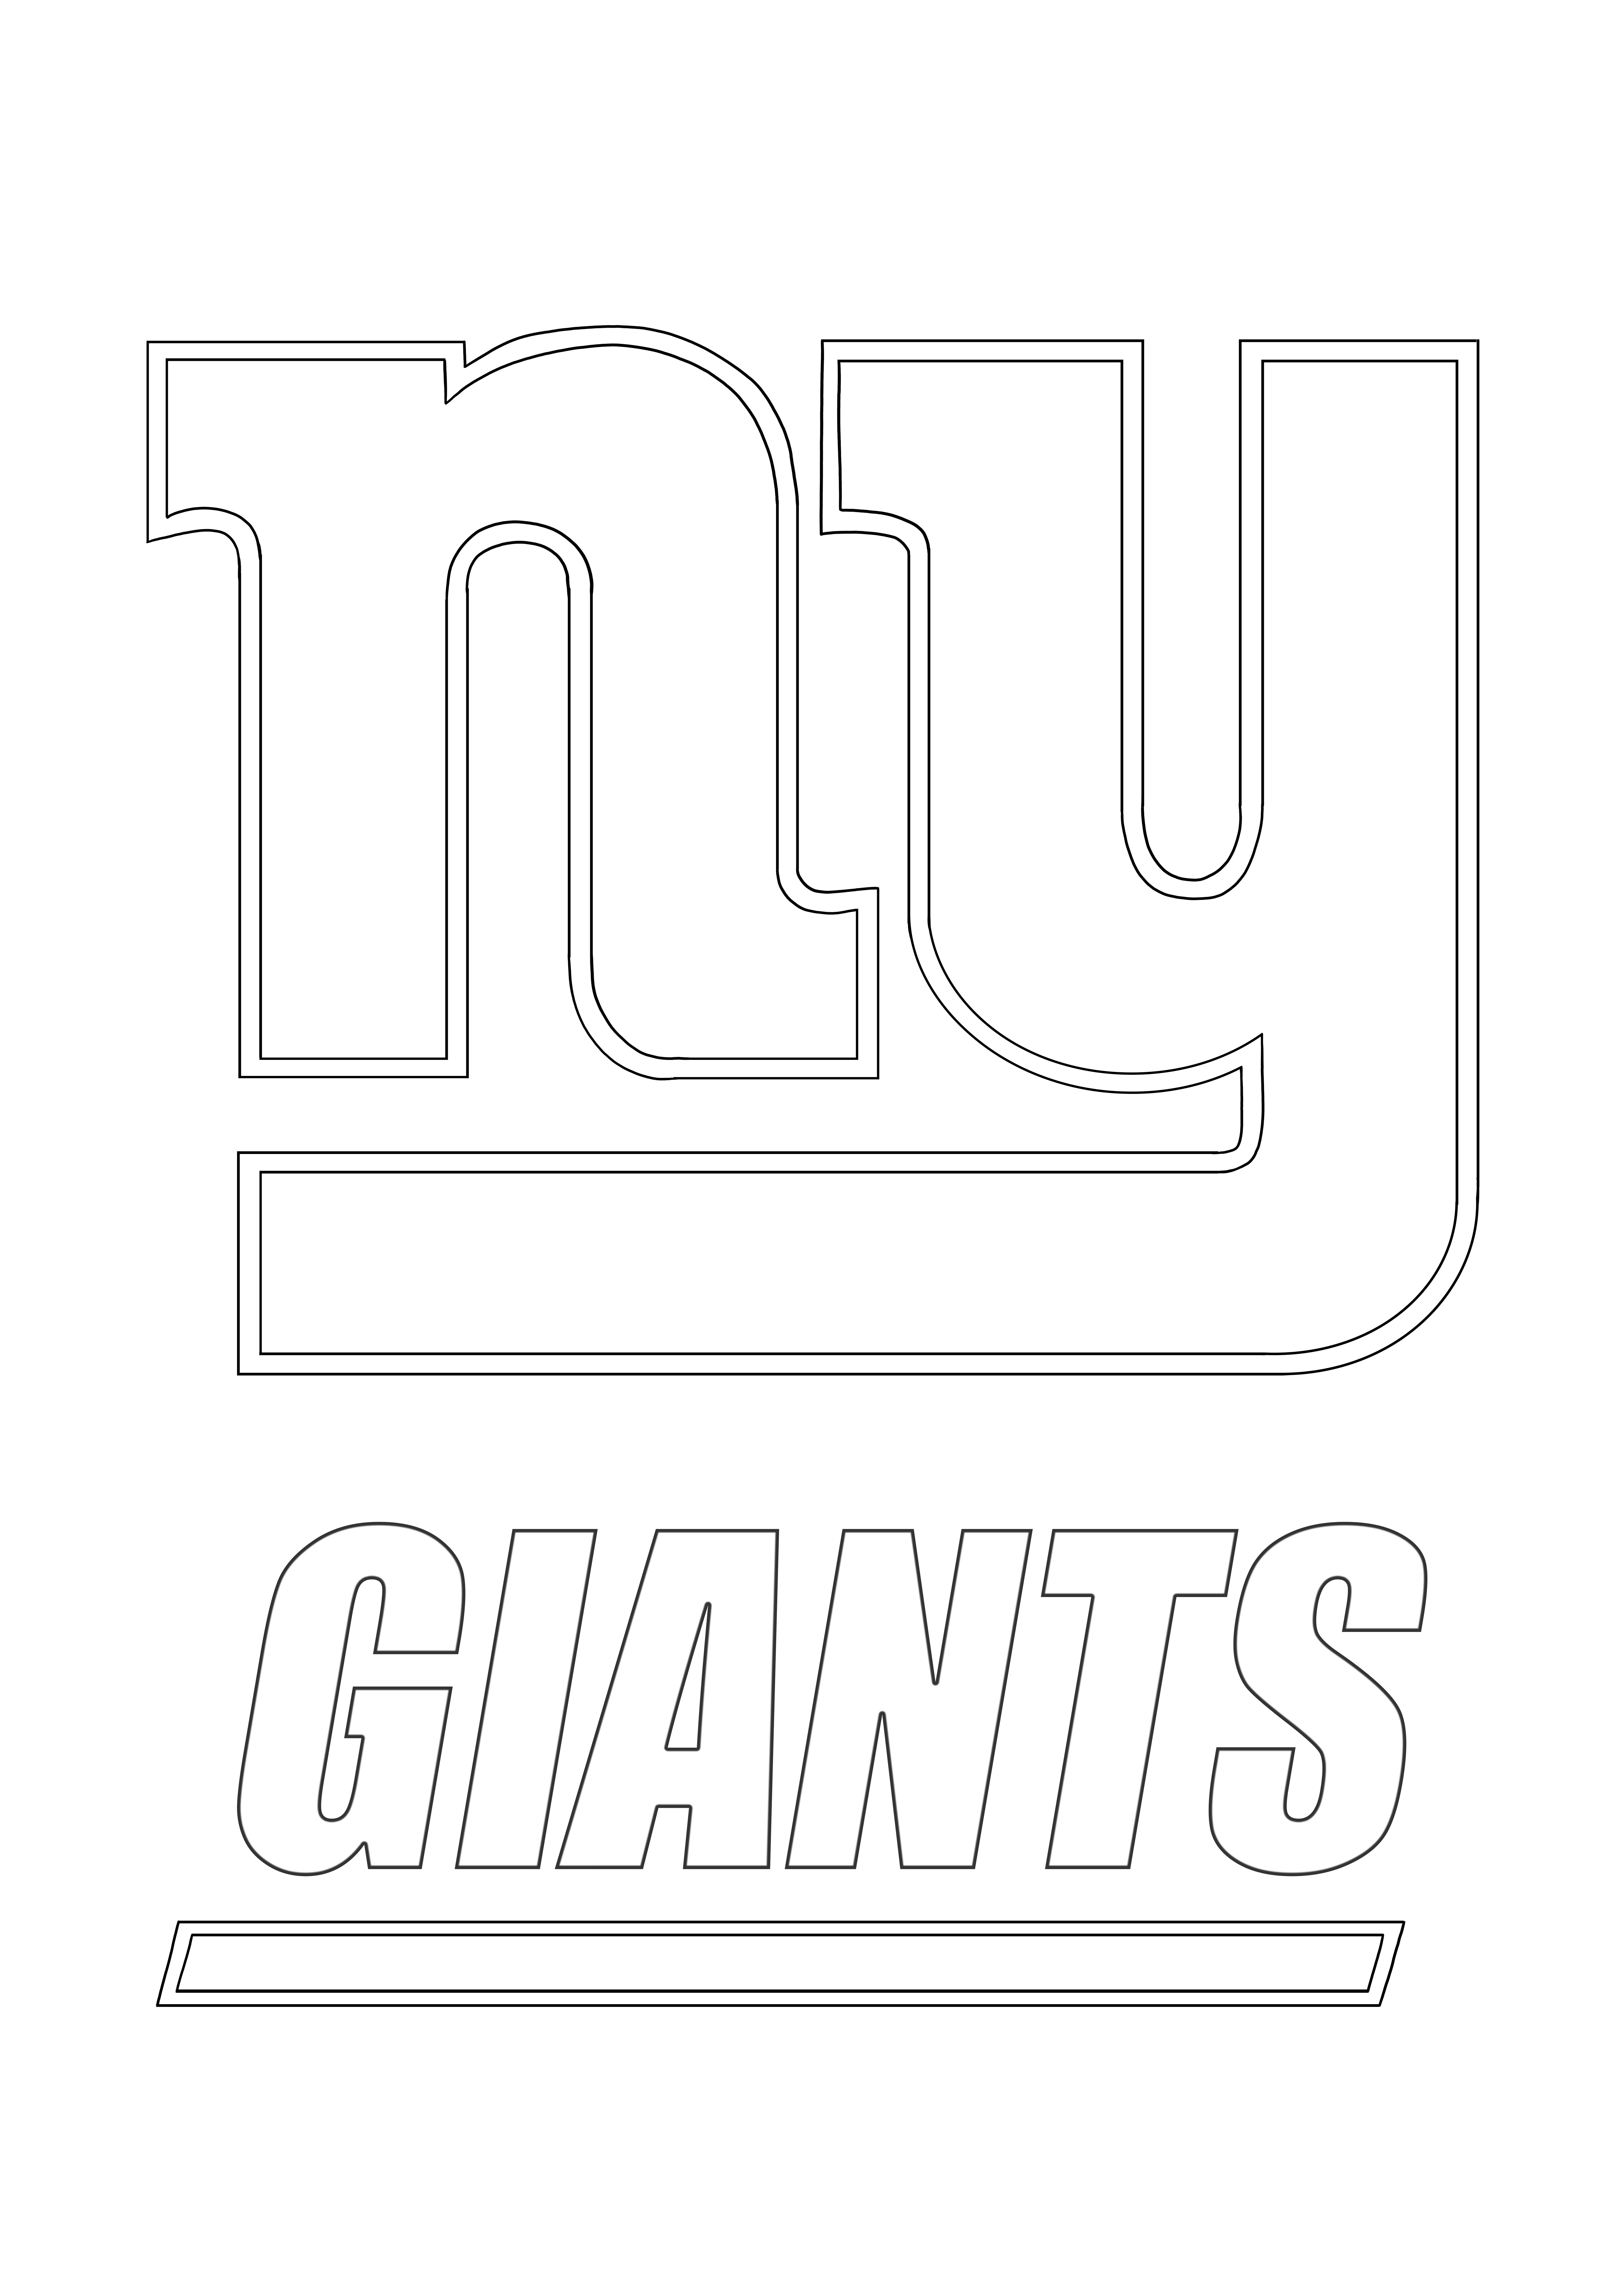 Logo Favorito New York Giants para colorear e imprimir gratis